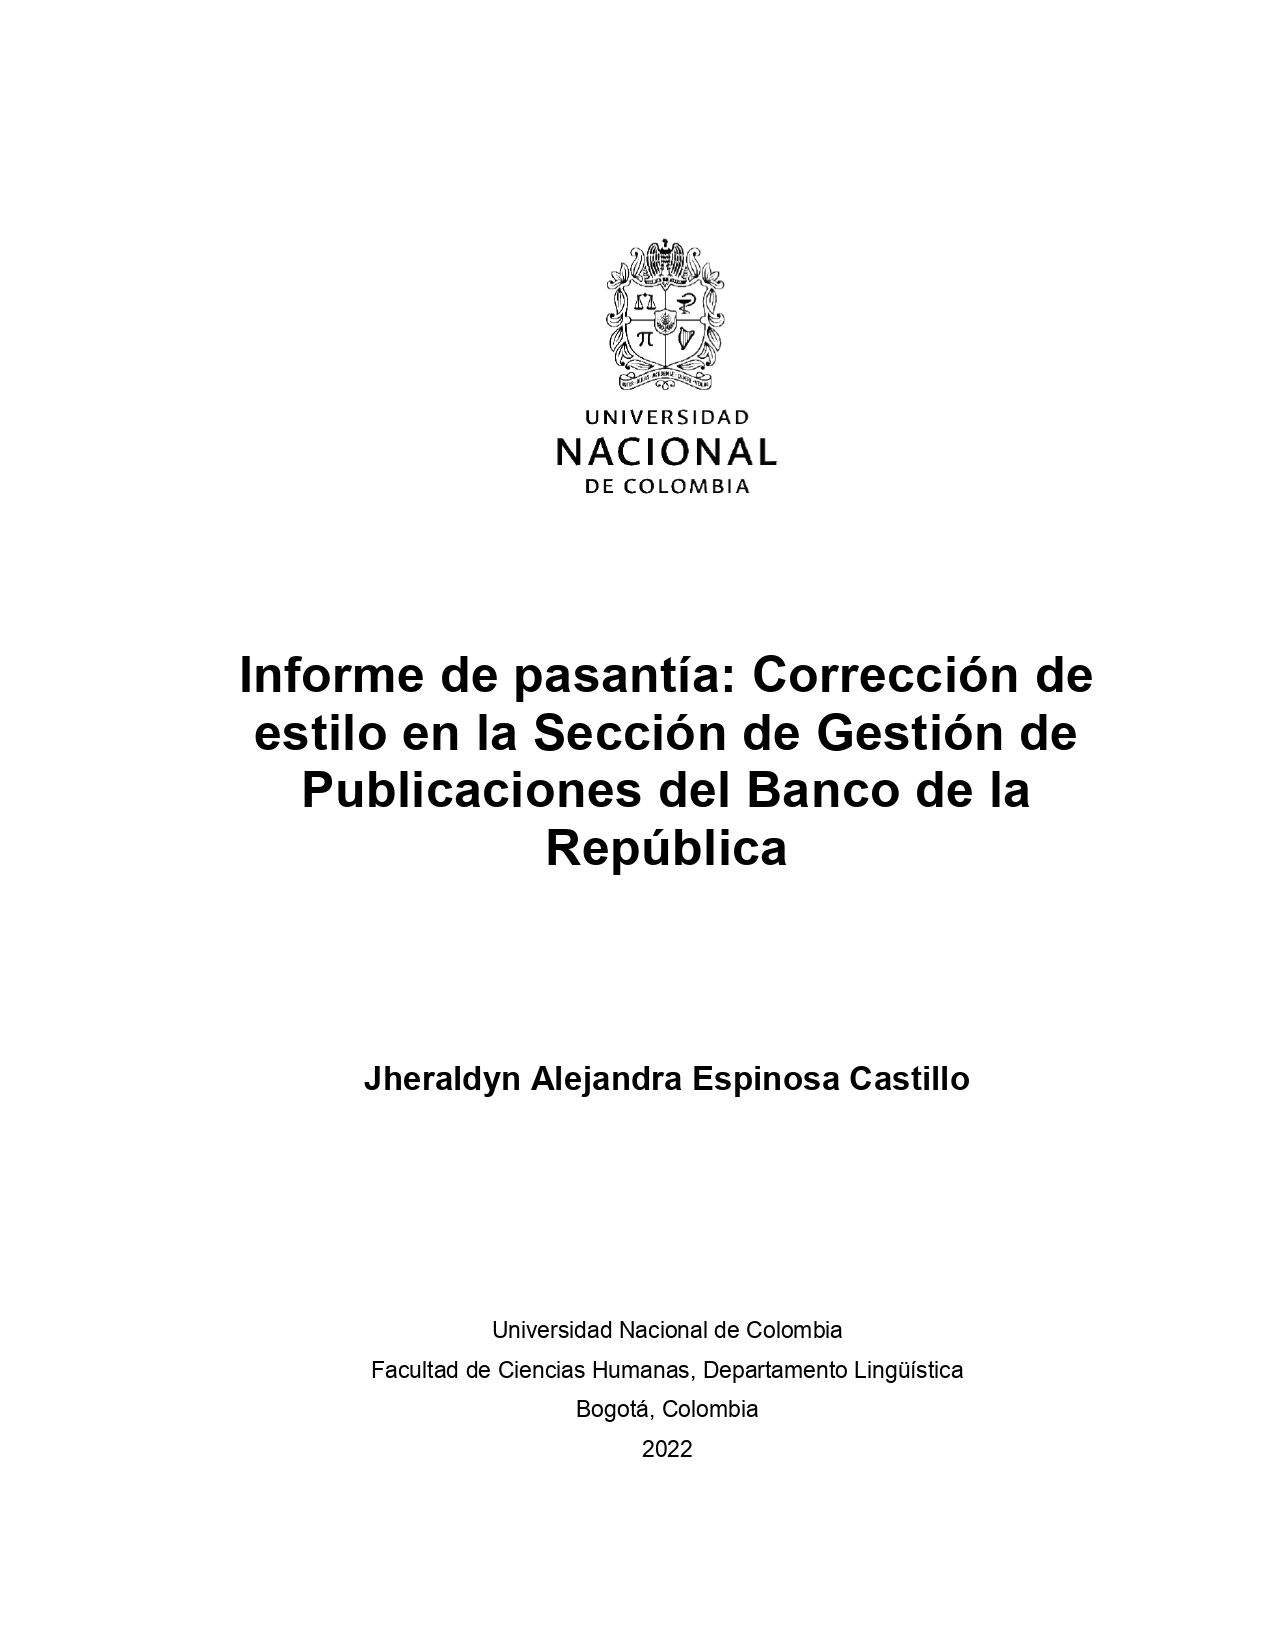 Informe de pasantía: Corrección de estilo en la Sección de Gestión de Publicaciones del Banco de la República